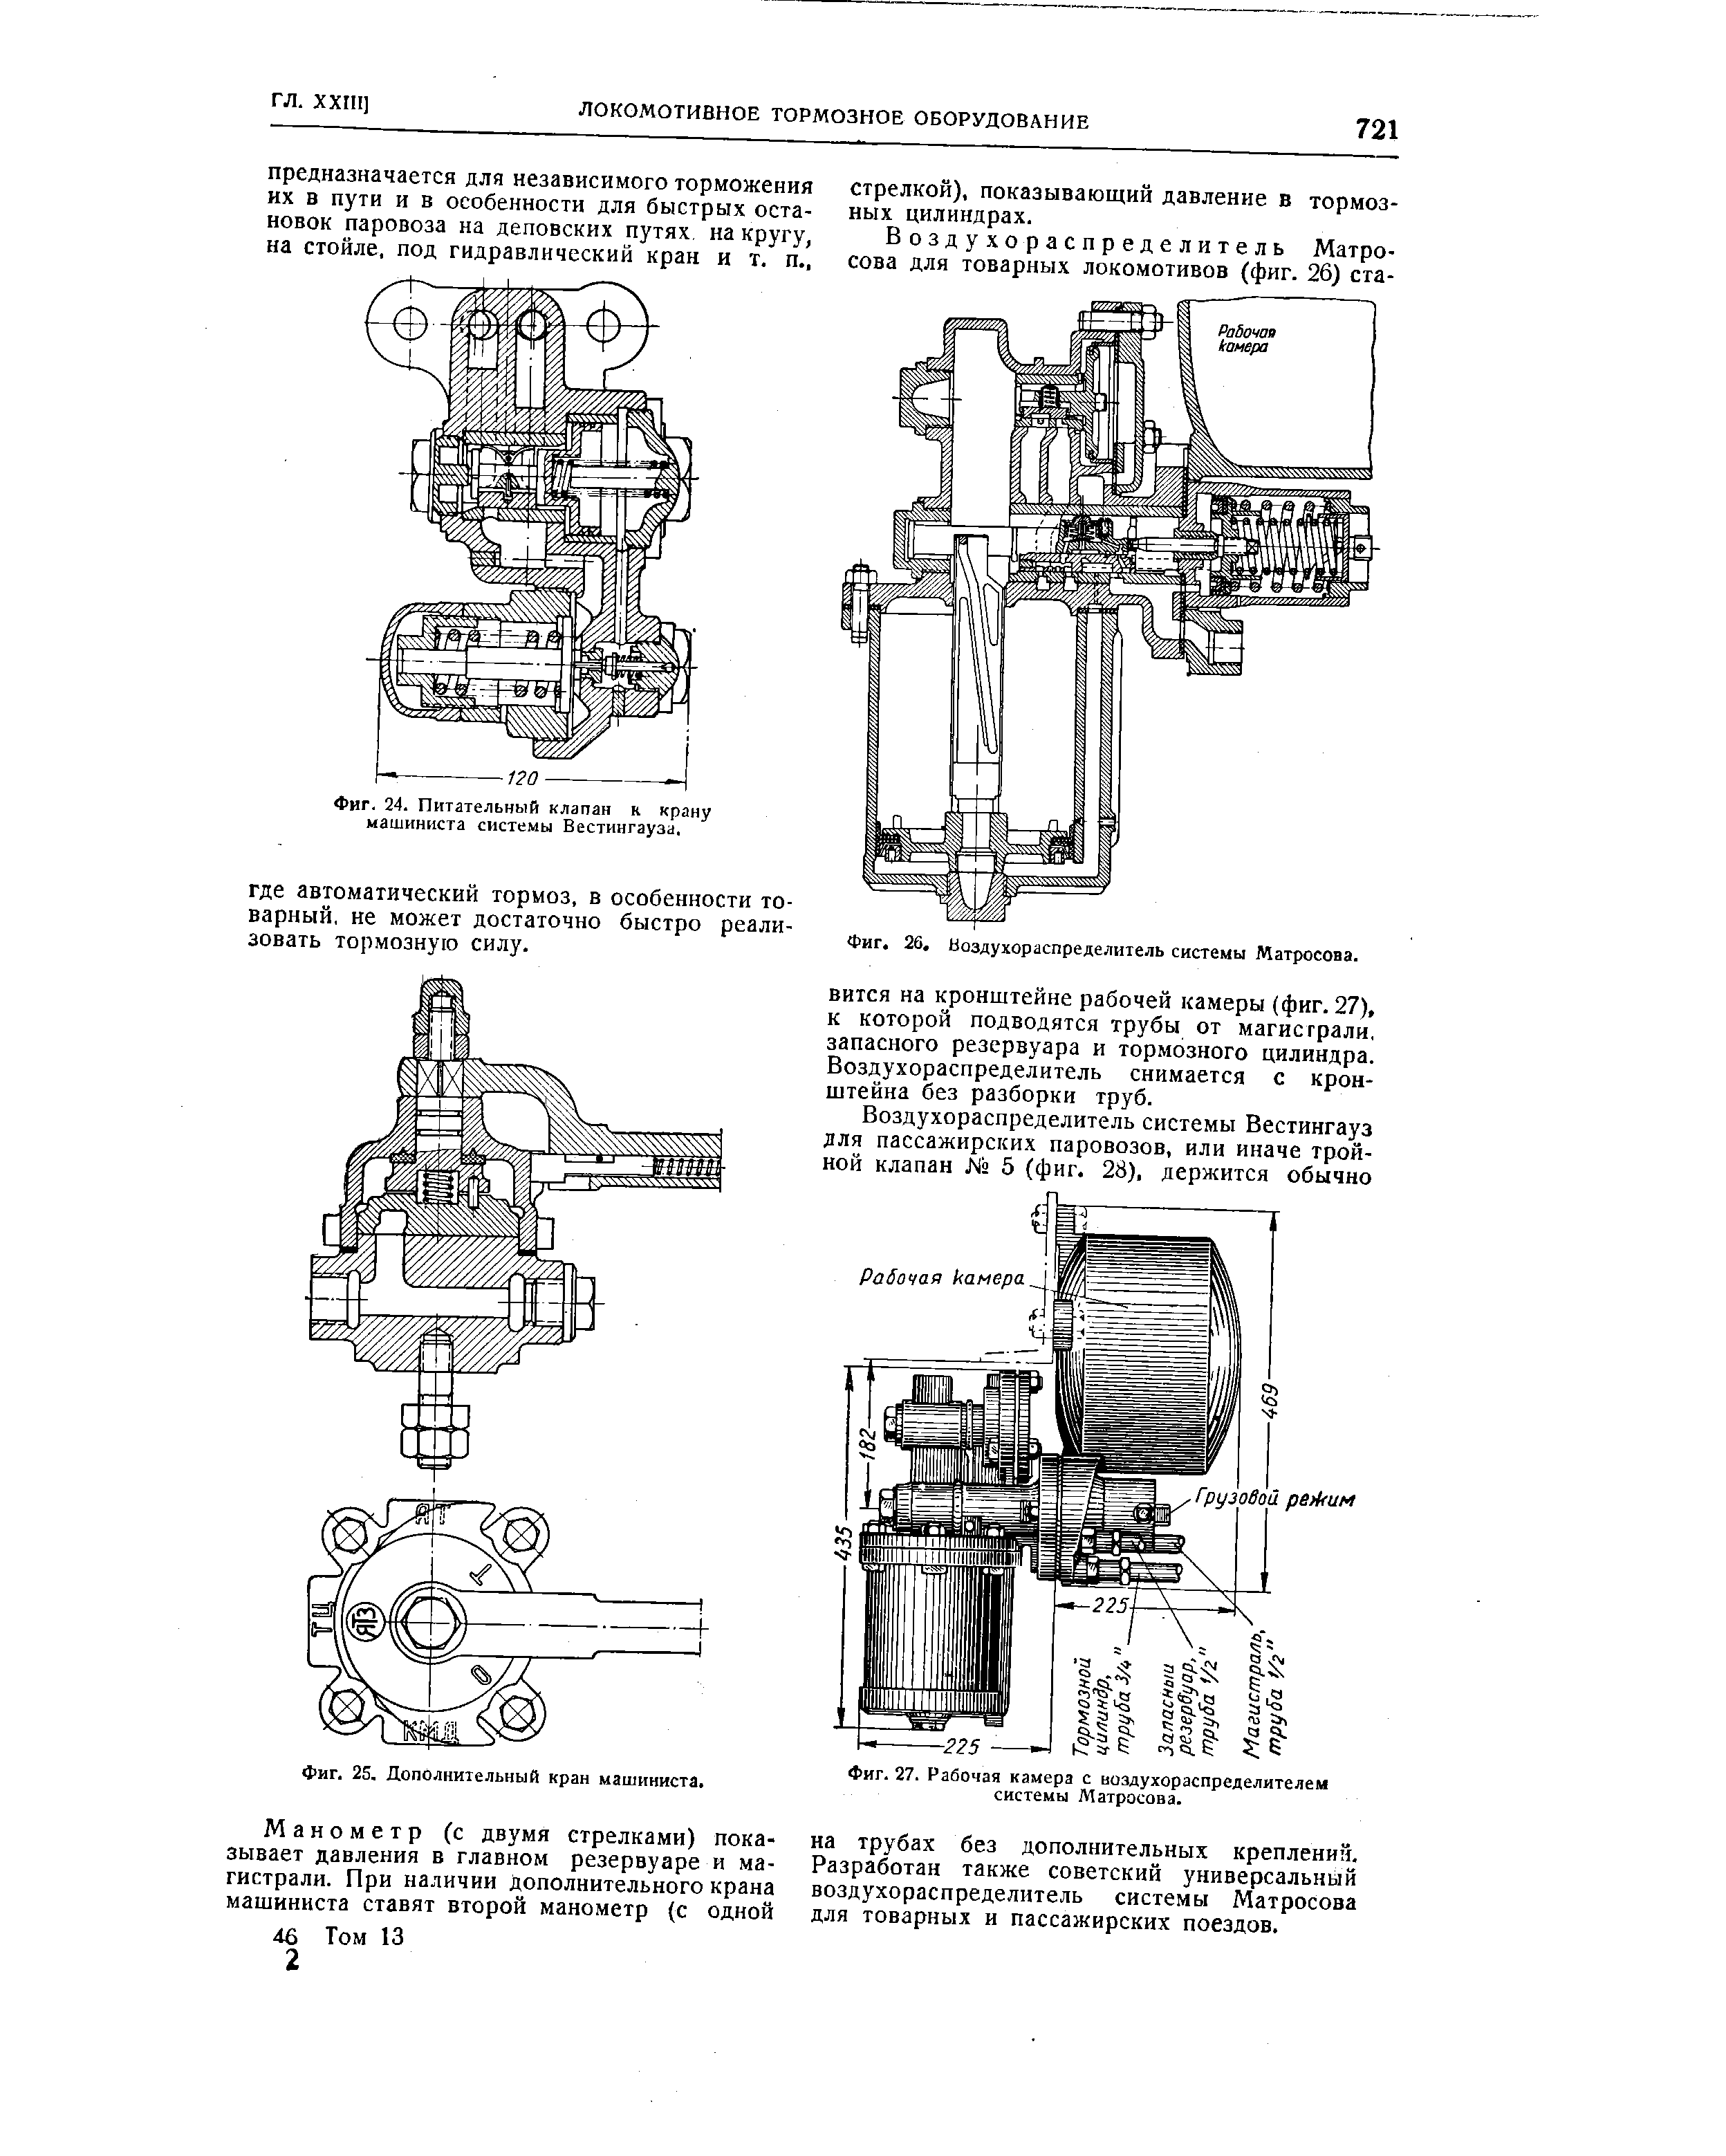 Схема крана машиниста 395